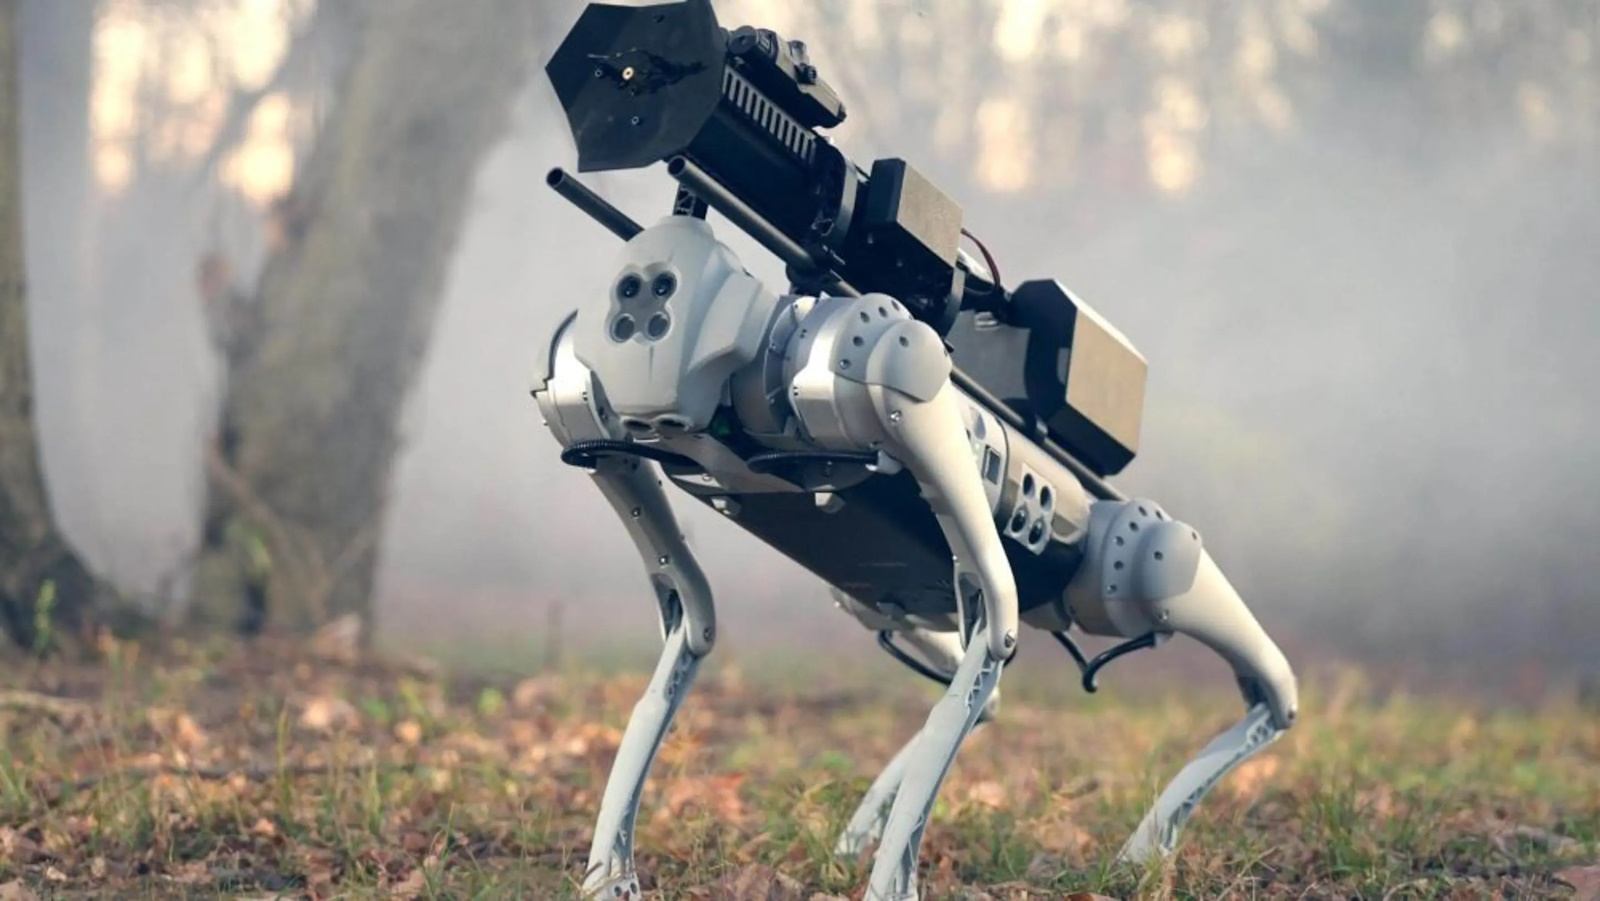 Le robot quadripède est un Unitree GO1. Son lance-flammes est un modèle ARC vendu dans le commerce aux États-Unis. © Throwflame